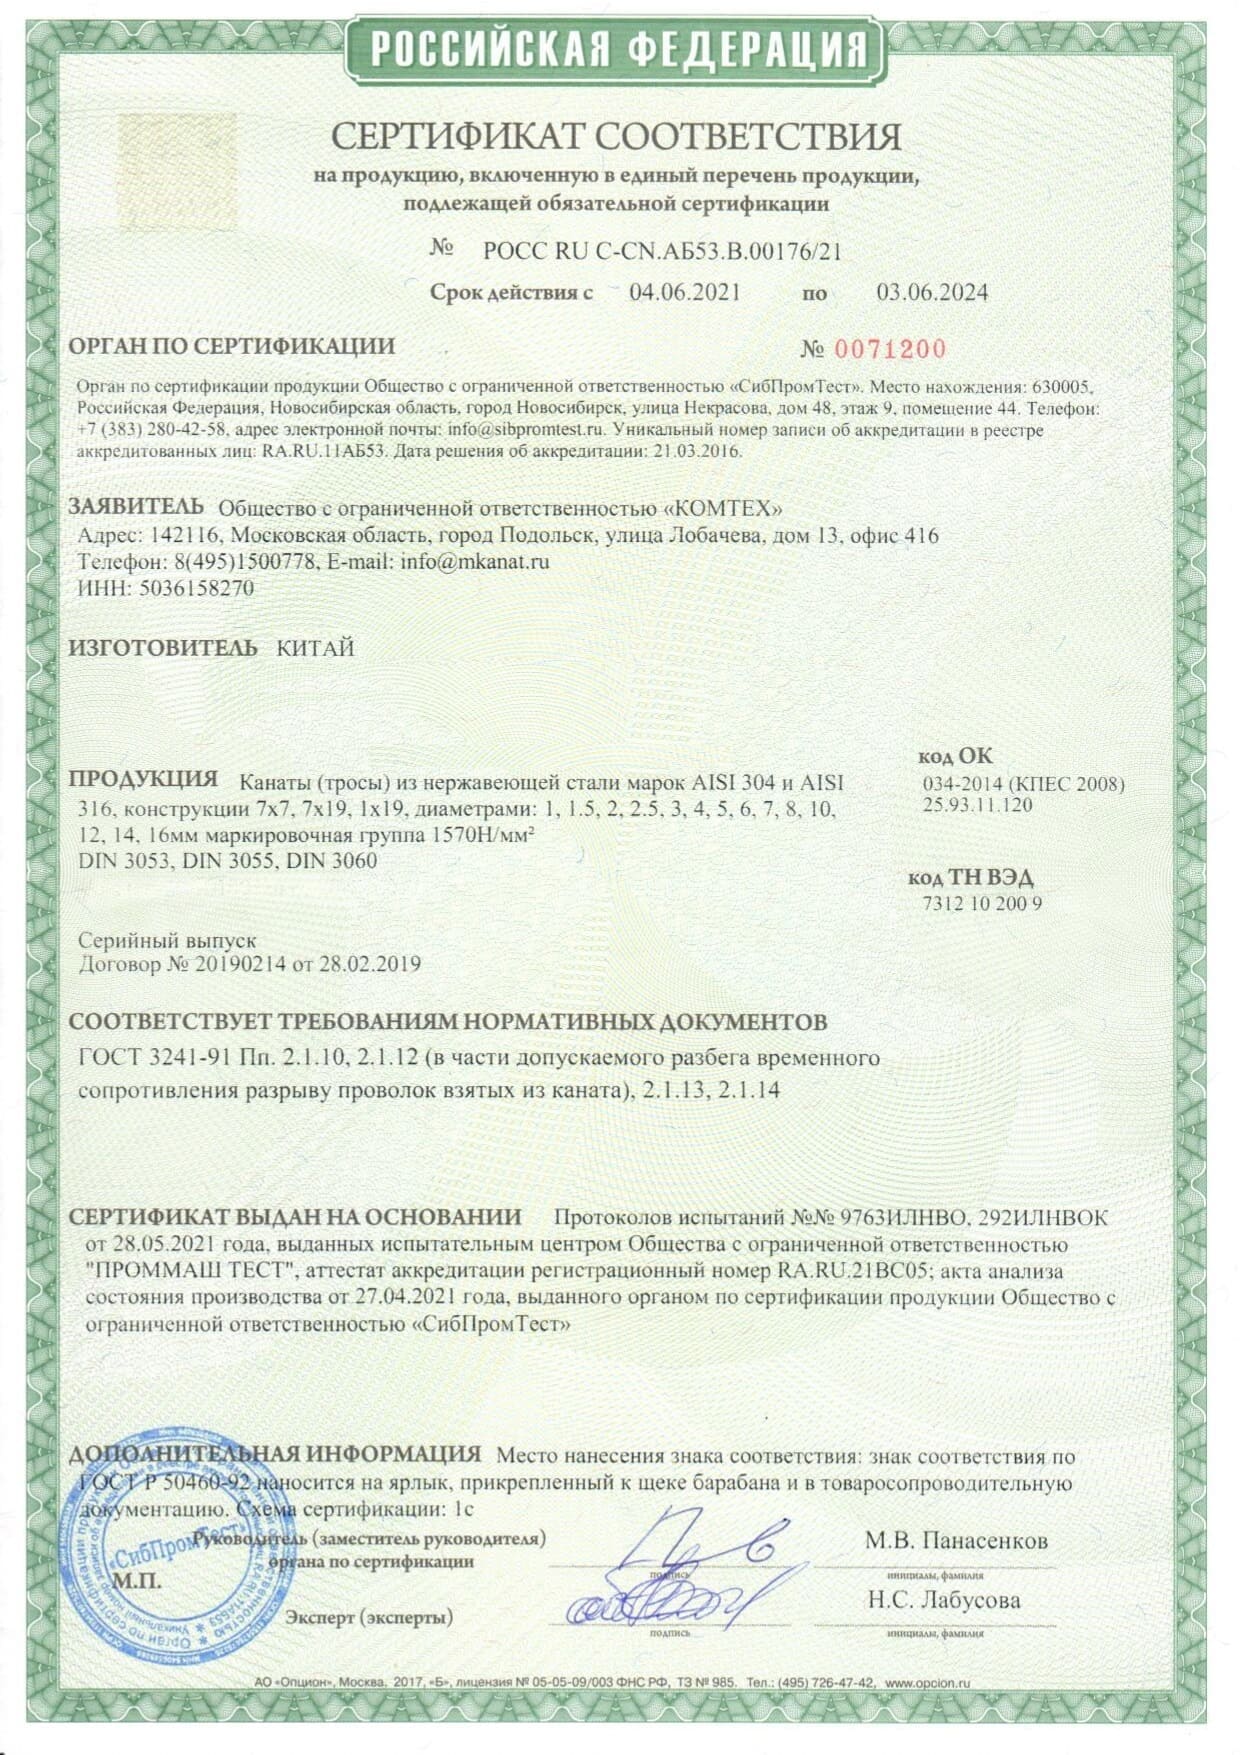 Сертификат соответствия. Срок действия с 04.06.2021 по 03.06.2024